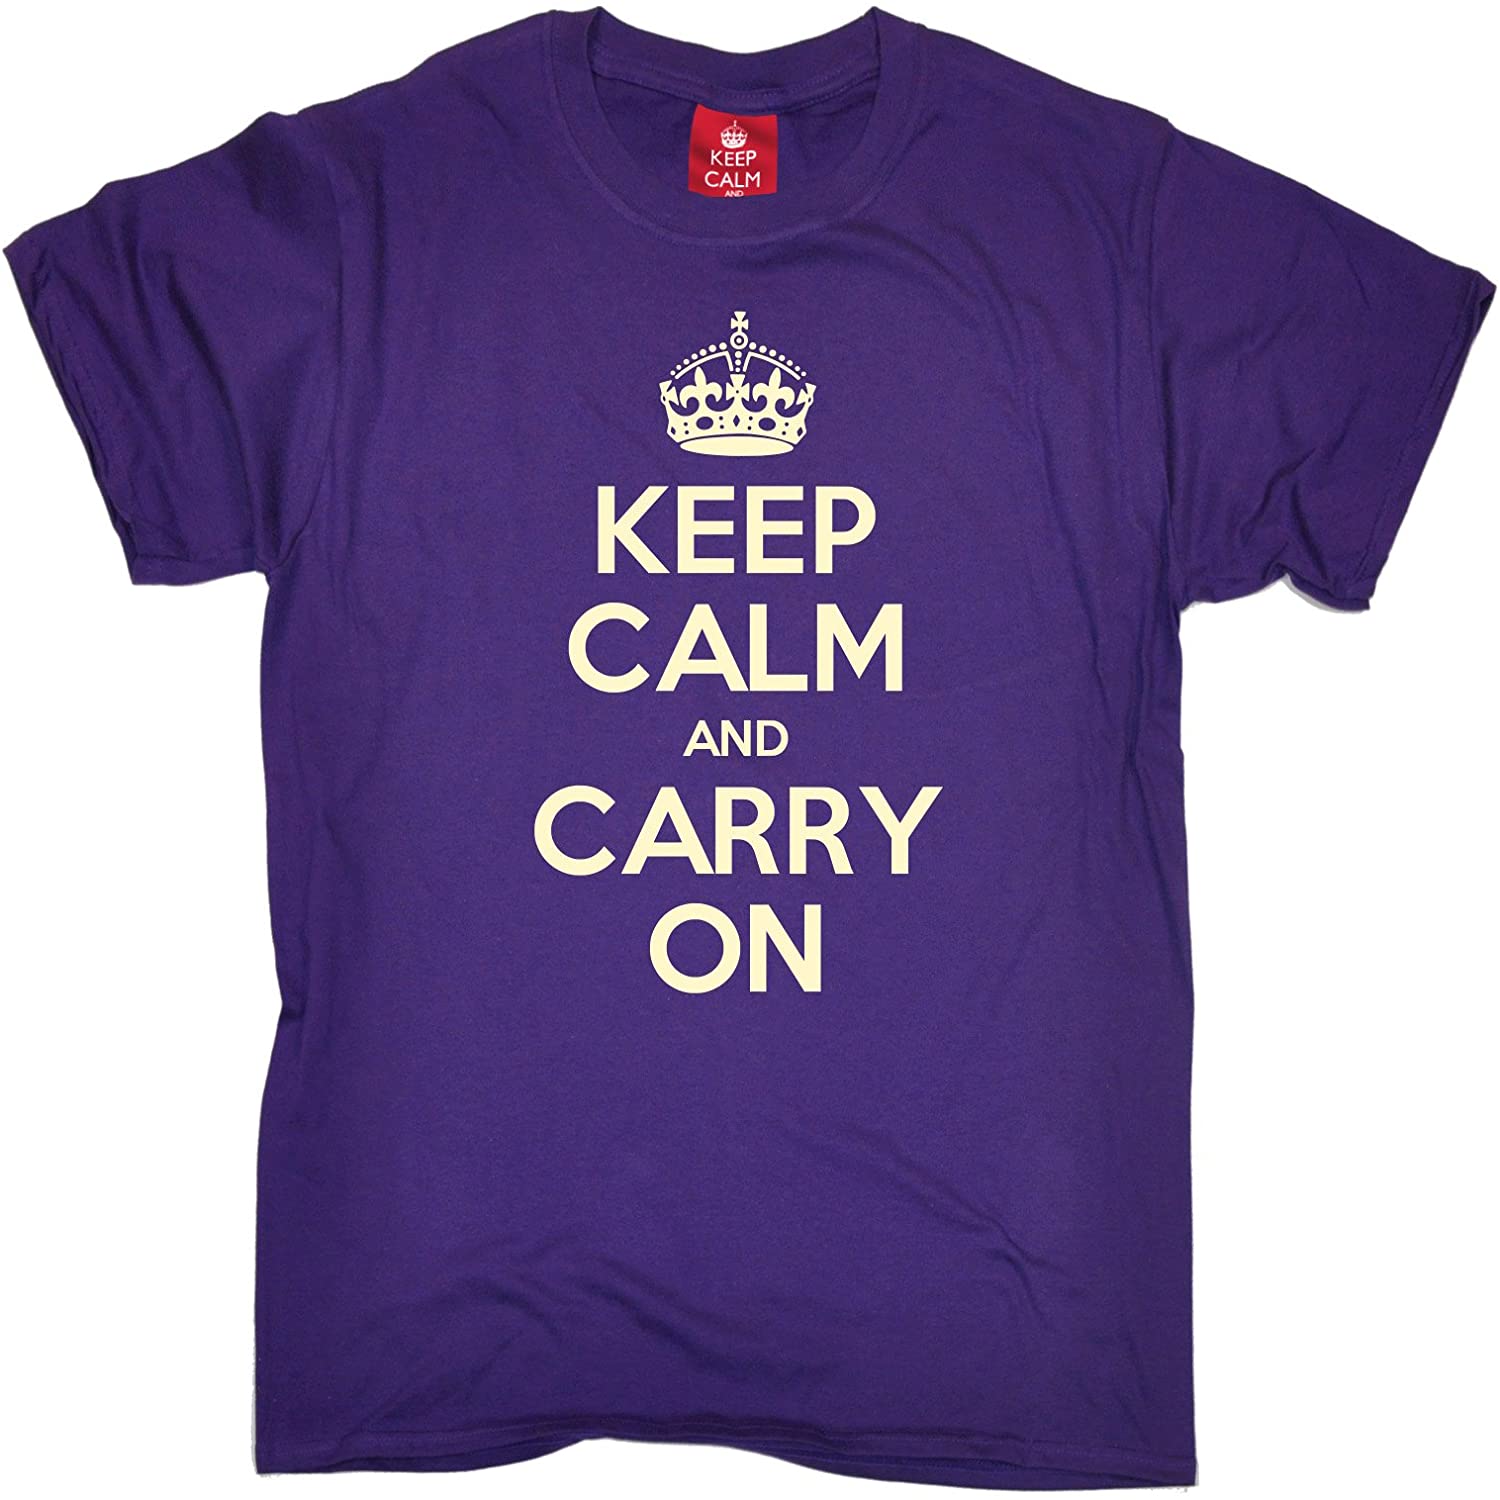 Yours to keep перевод. Футболка keep Calm.. Keep Calm and carry on футболка. Keep Calm надпись на футболке. Keep your Shirt on.